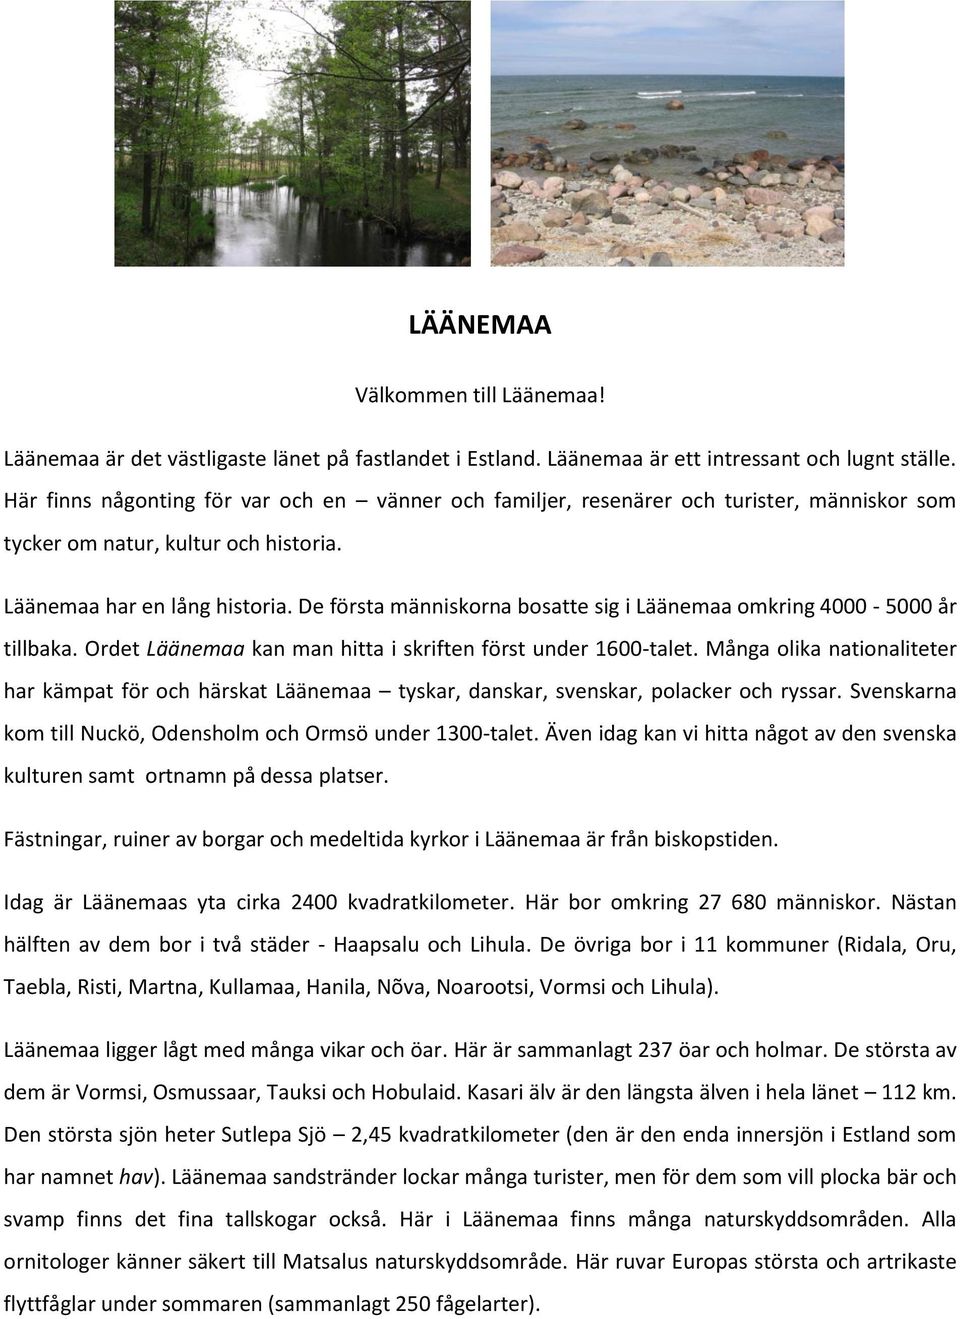 De första människorna bosatte sig i Läänemaa omkring 4000-5000 år tillbaka. Ordet Läänemaa kan man hitta i skriften först under 1600-talet.